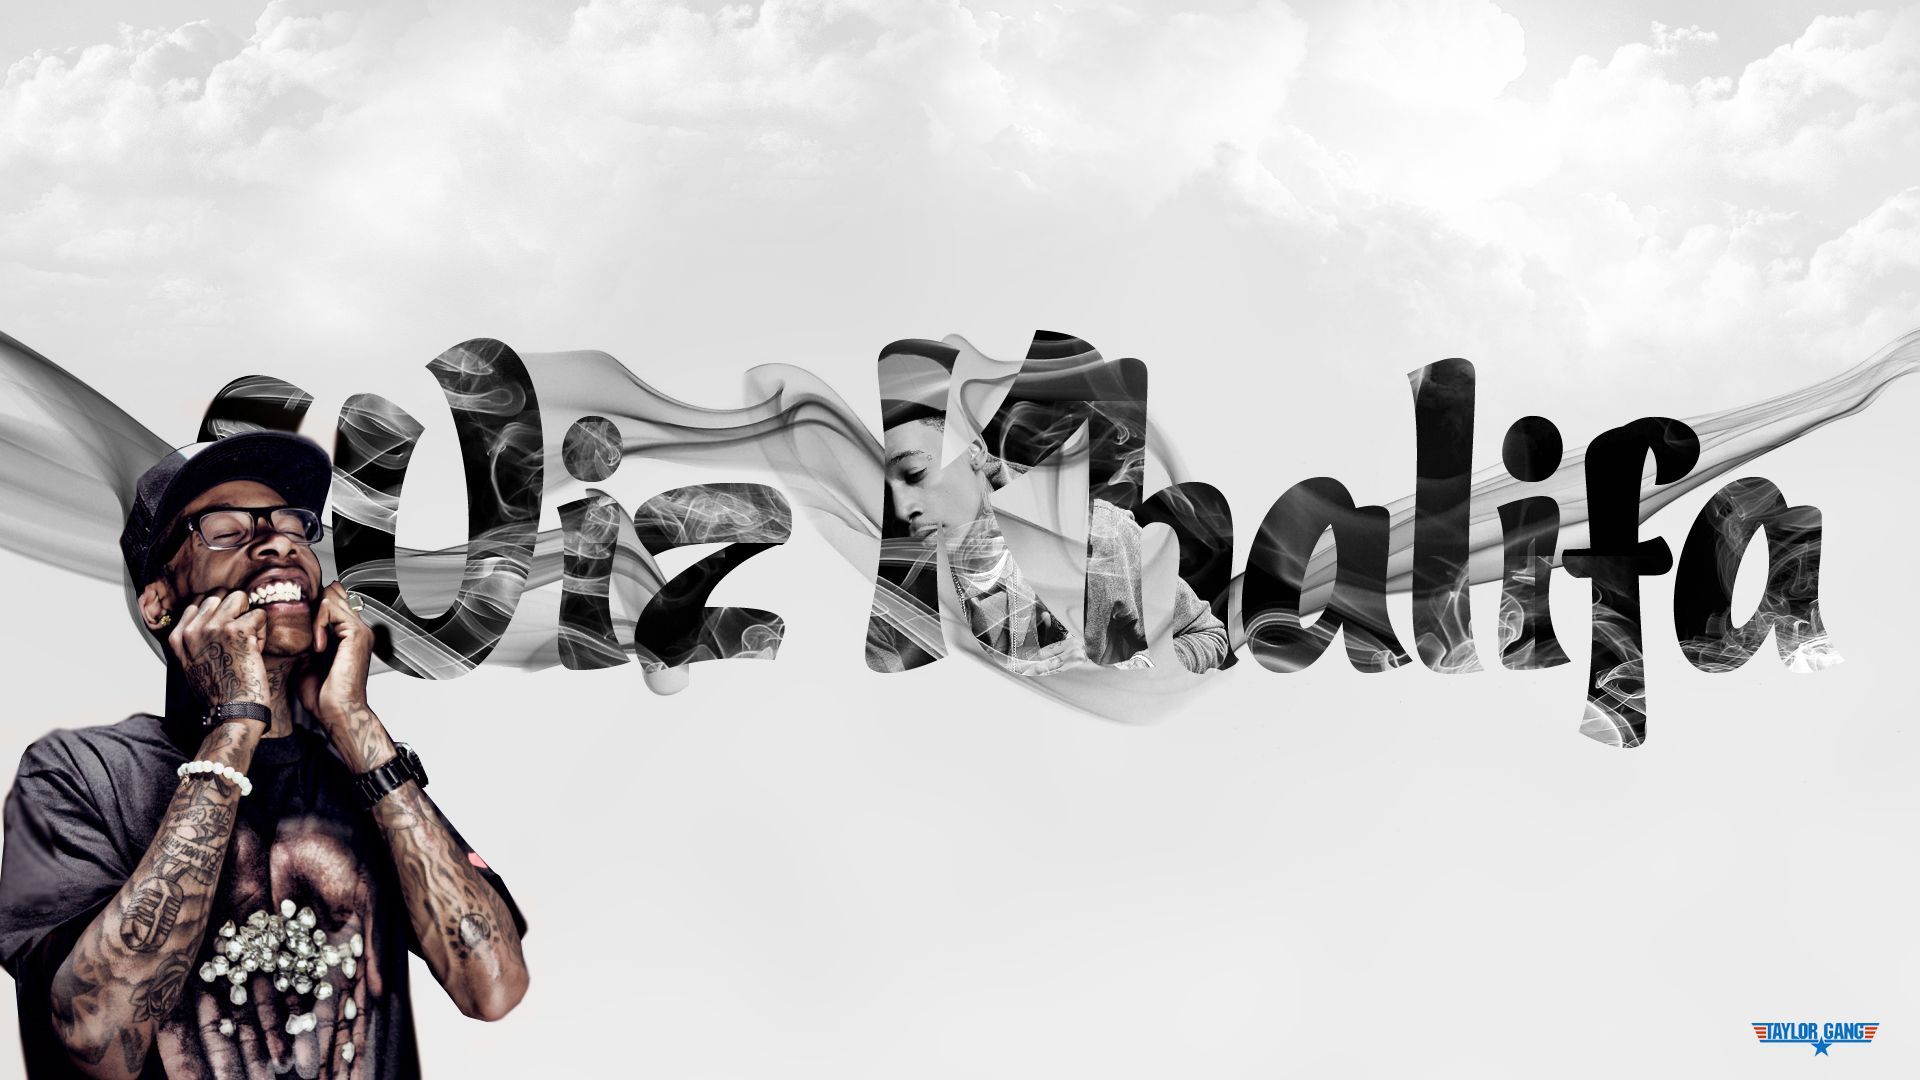 Music Wiz Khalifa HD Wallpaper | Background Image